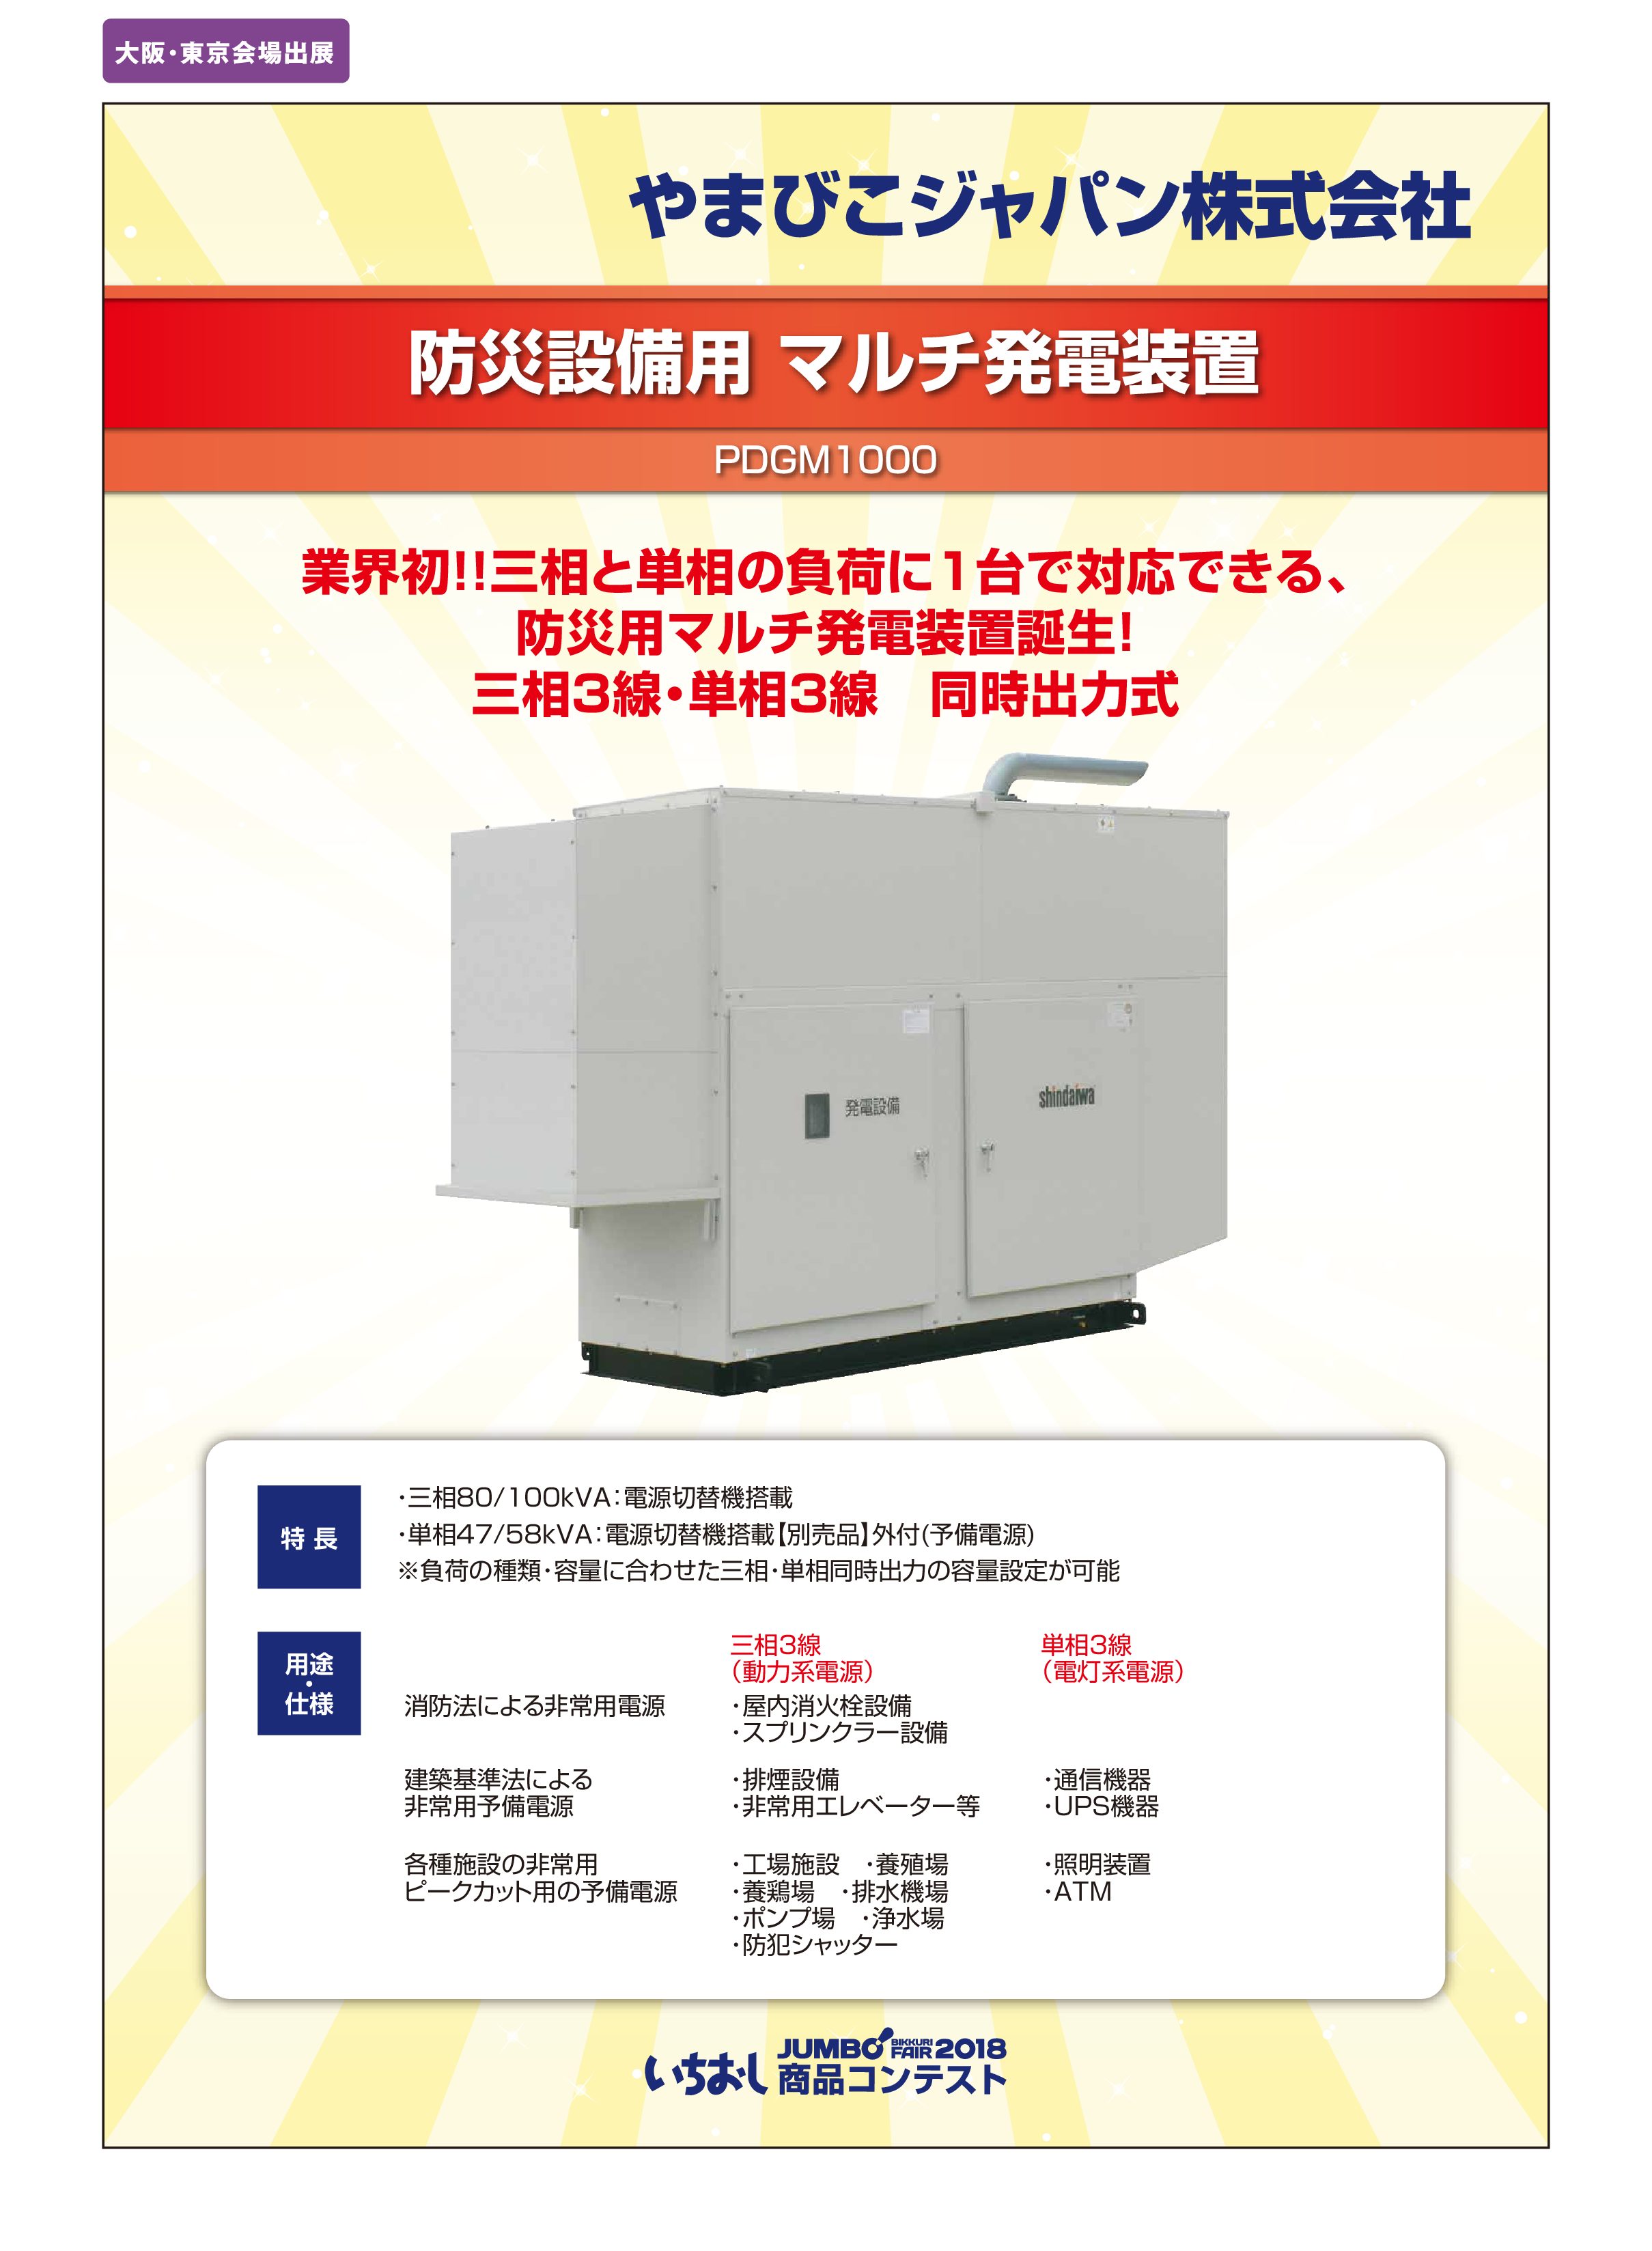 「防災設備用 マルチ発電装置」やまびこジャパン株式会社の画像